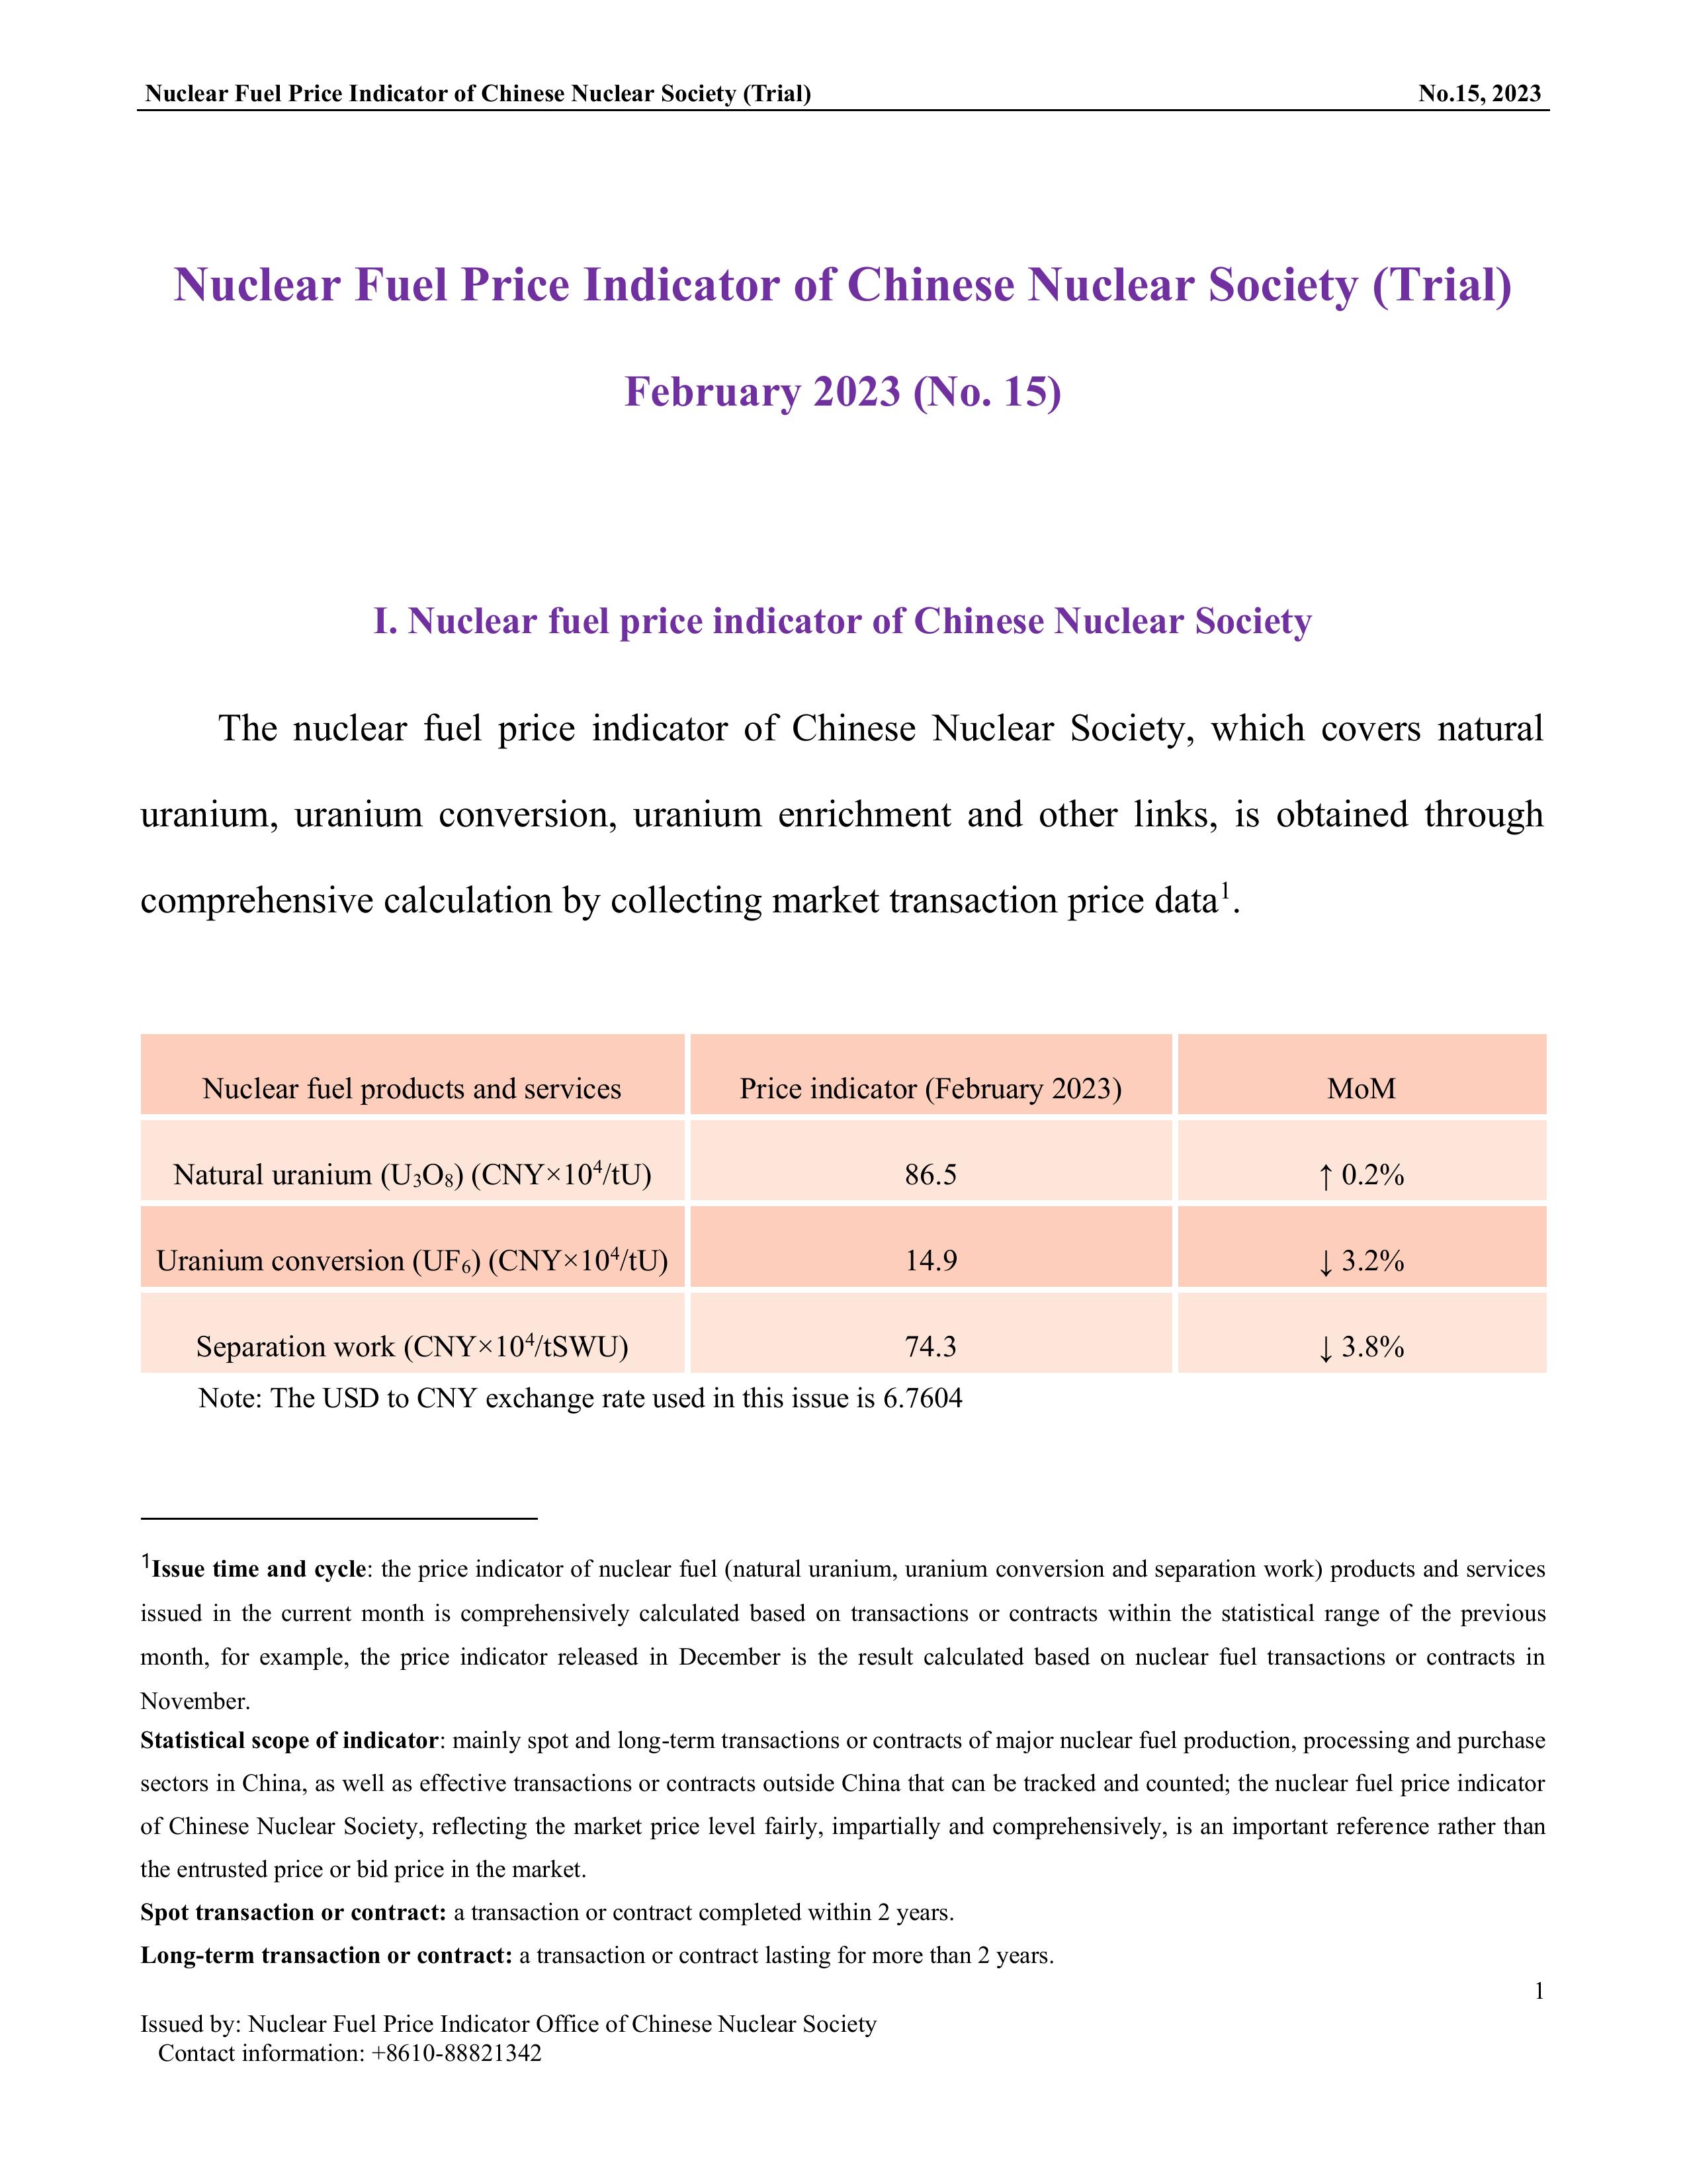 中国核学会核燃料价格指数(试运行)（2023年2月,总第15期）-终稿_EN-1.jpg